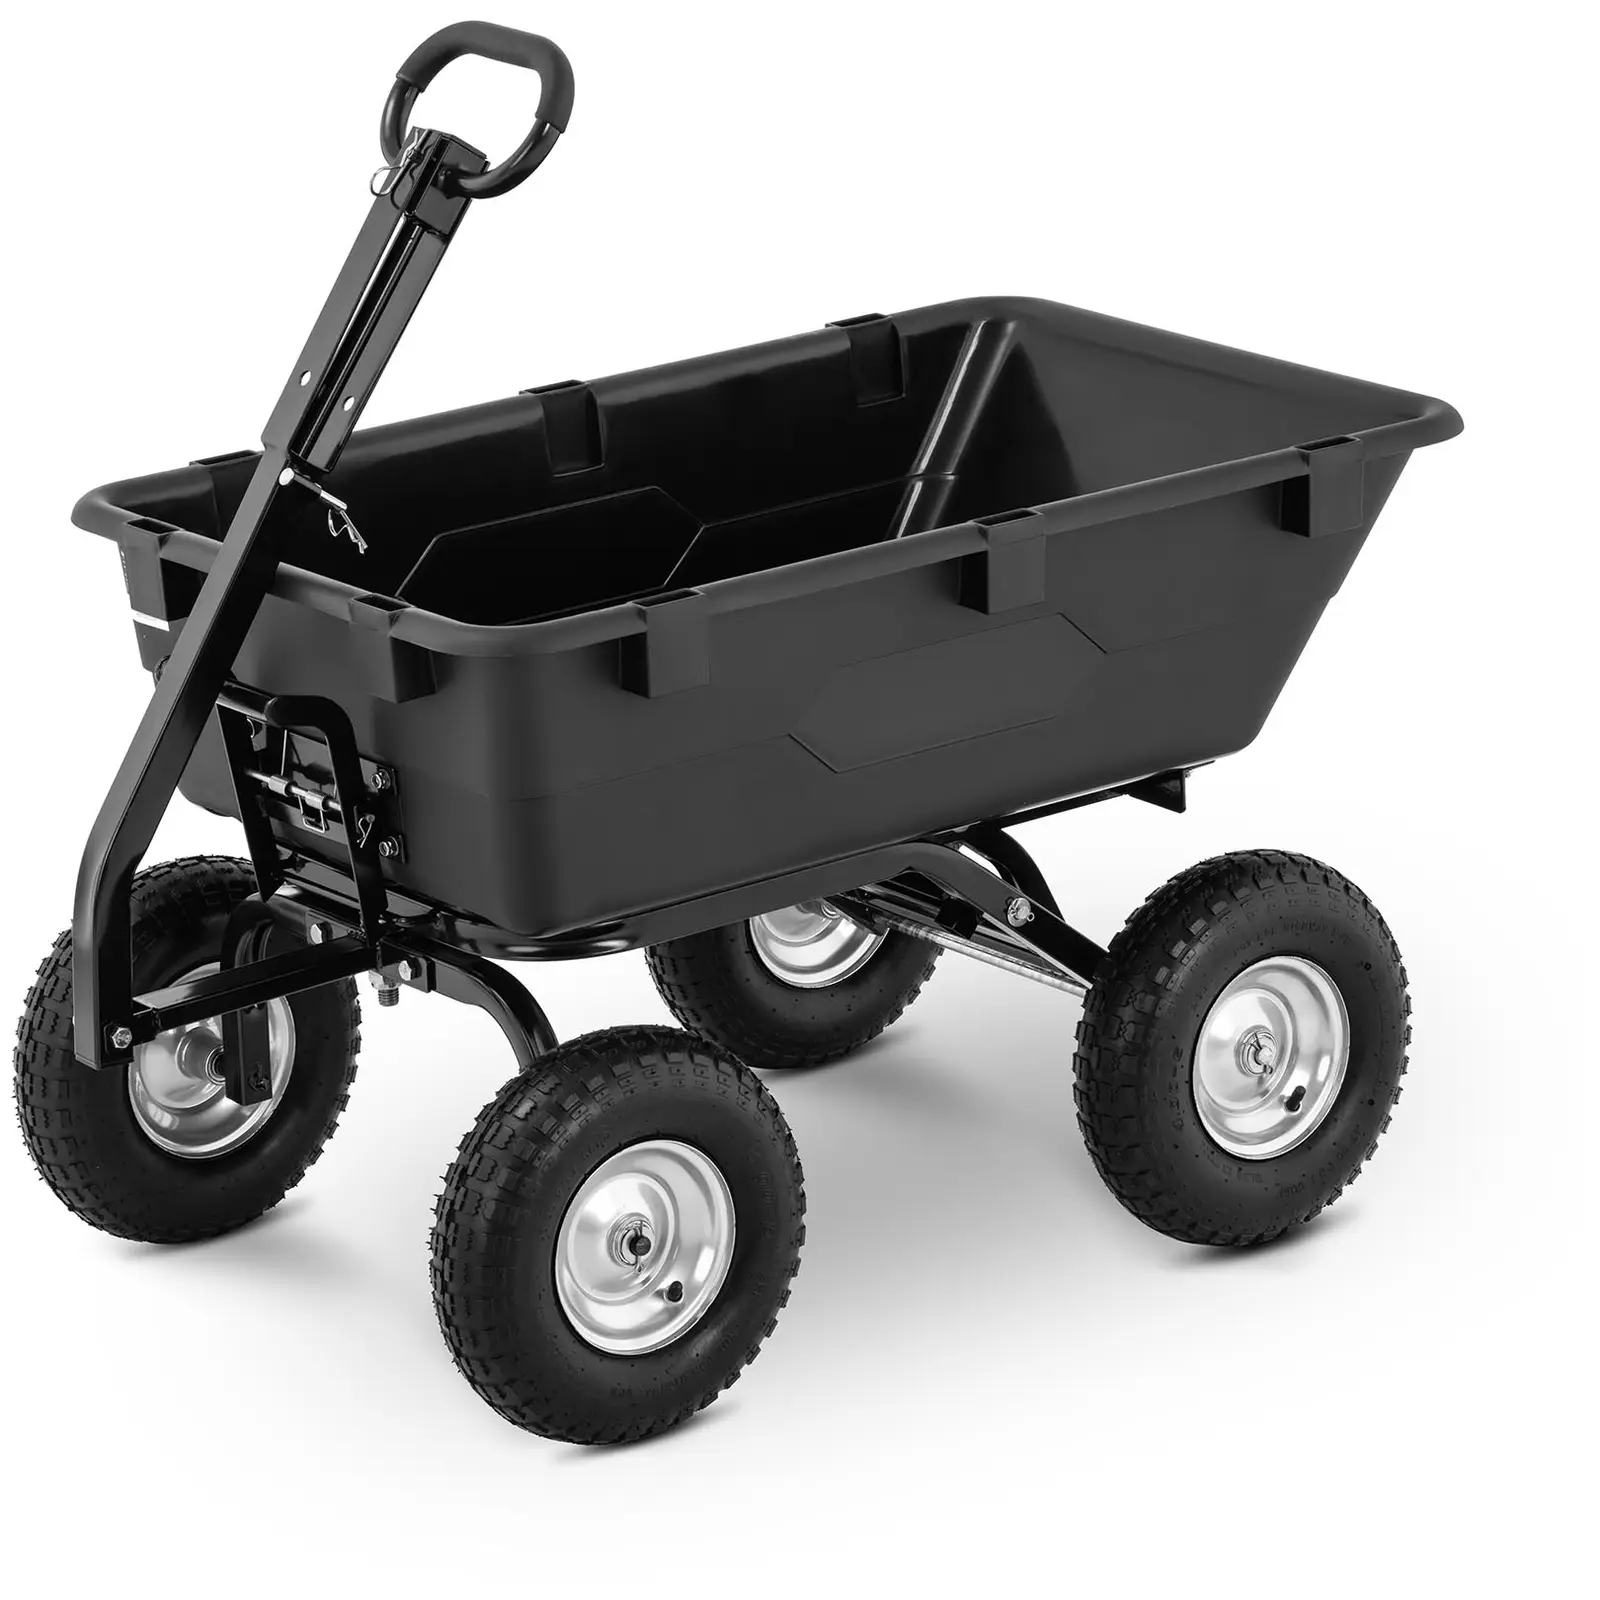 Zahradní vozík - 550 kg - sklápěcí - 150 l